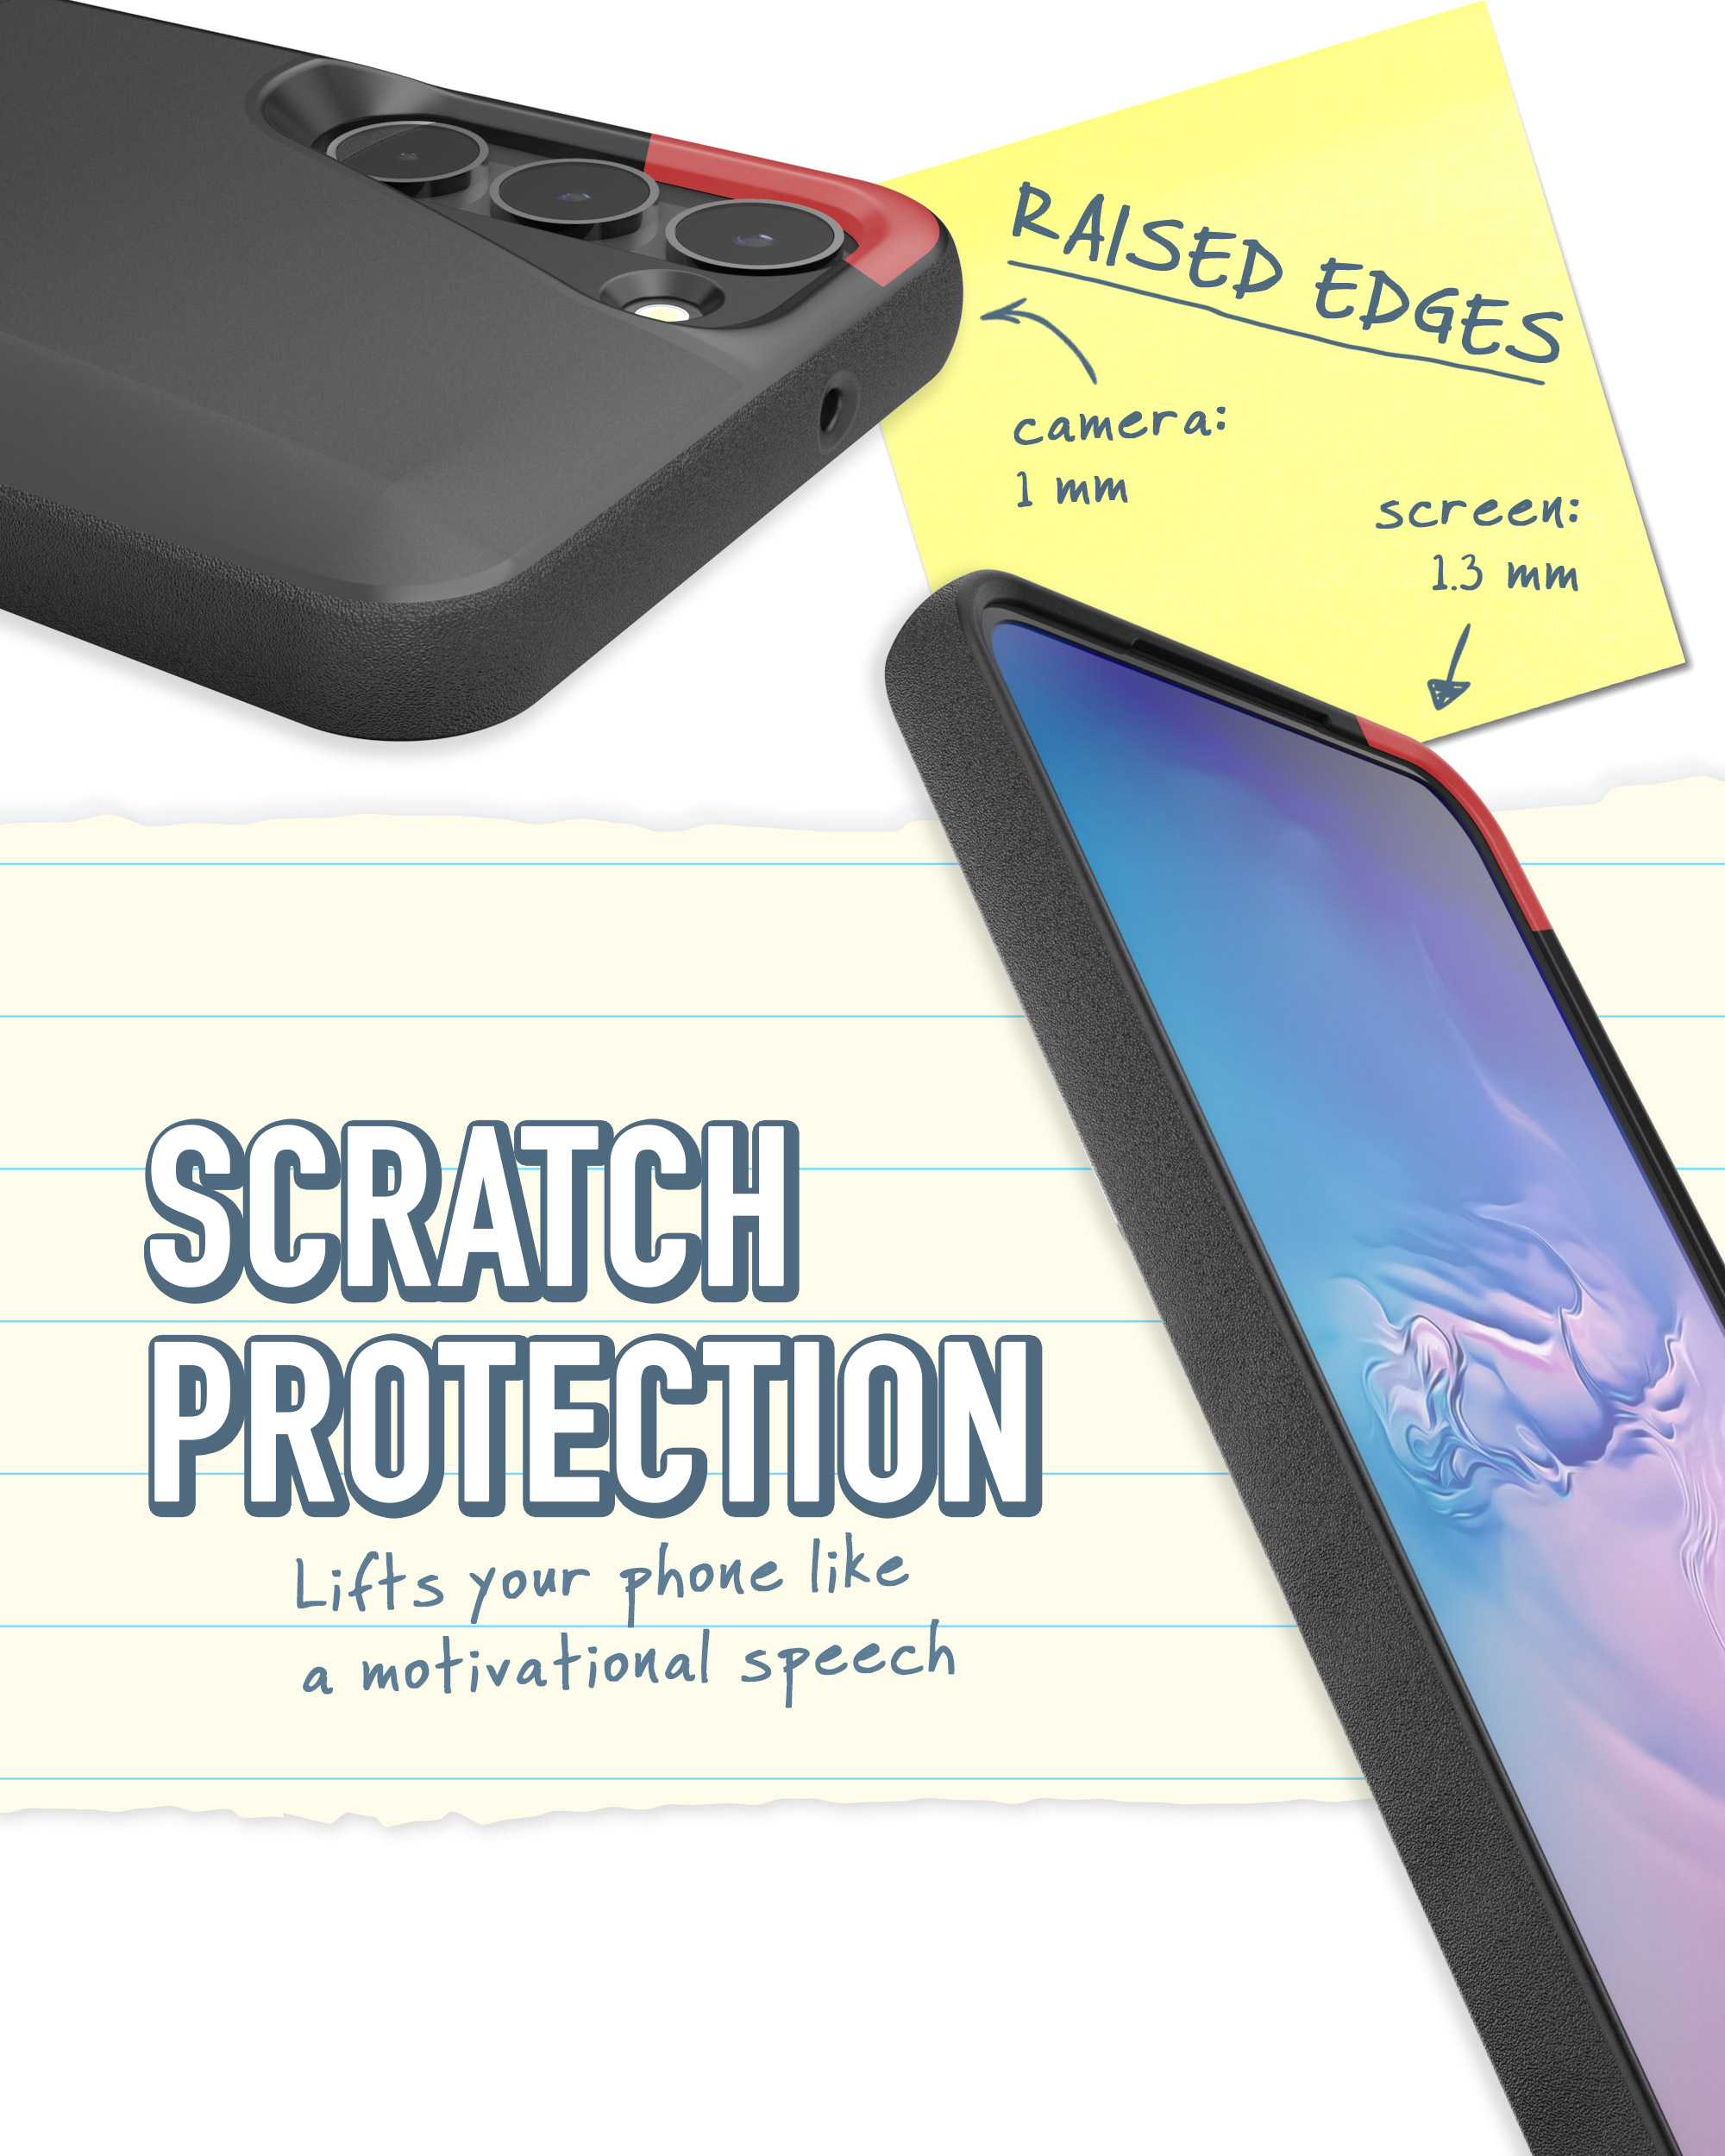 Smartish iPhone 11 Wallet Case - Wallet Slayer Vol. 1 (Slim + Protective) Credit Card Holder - Black Tie Affair